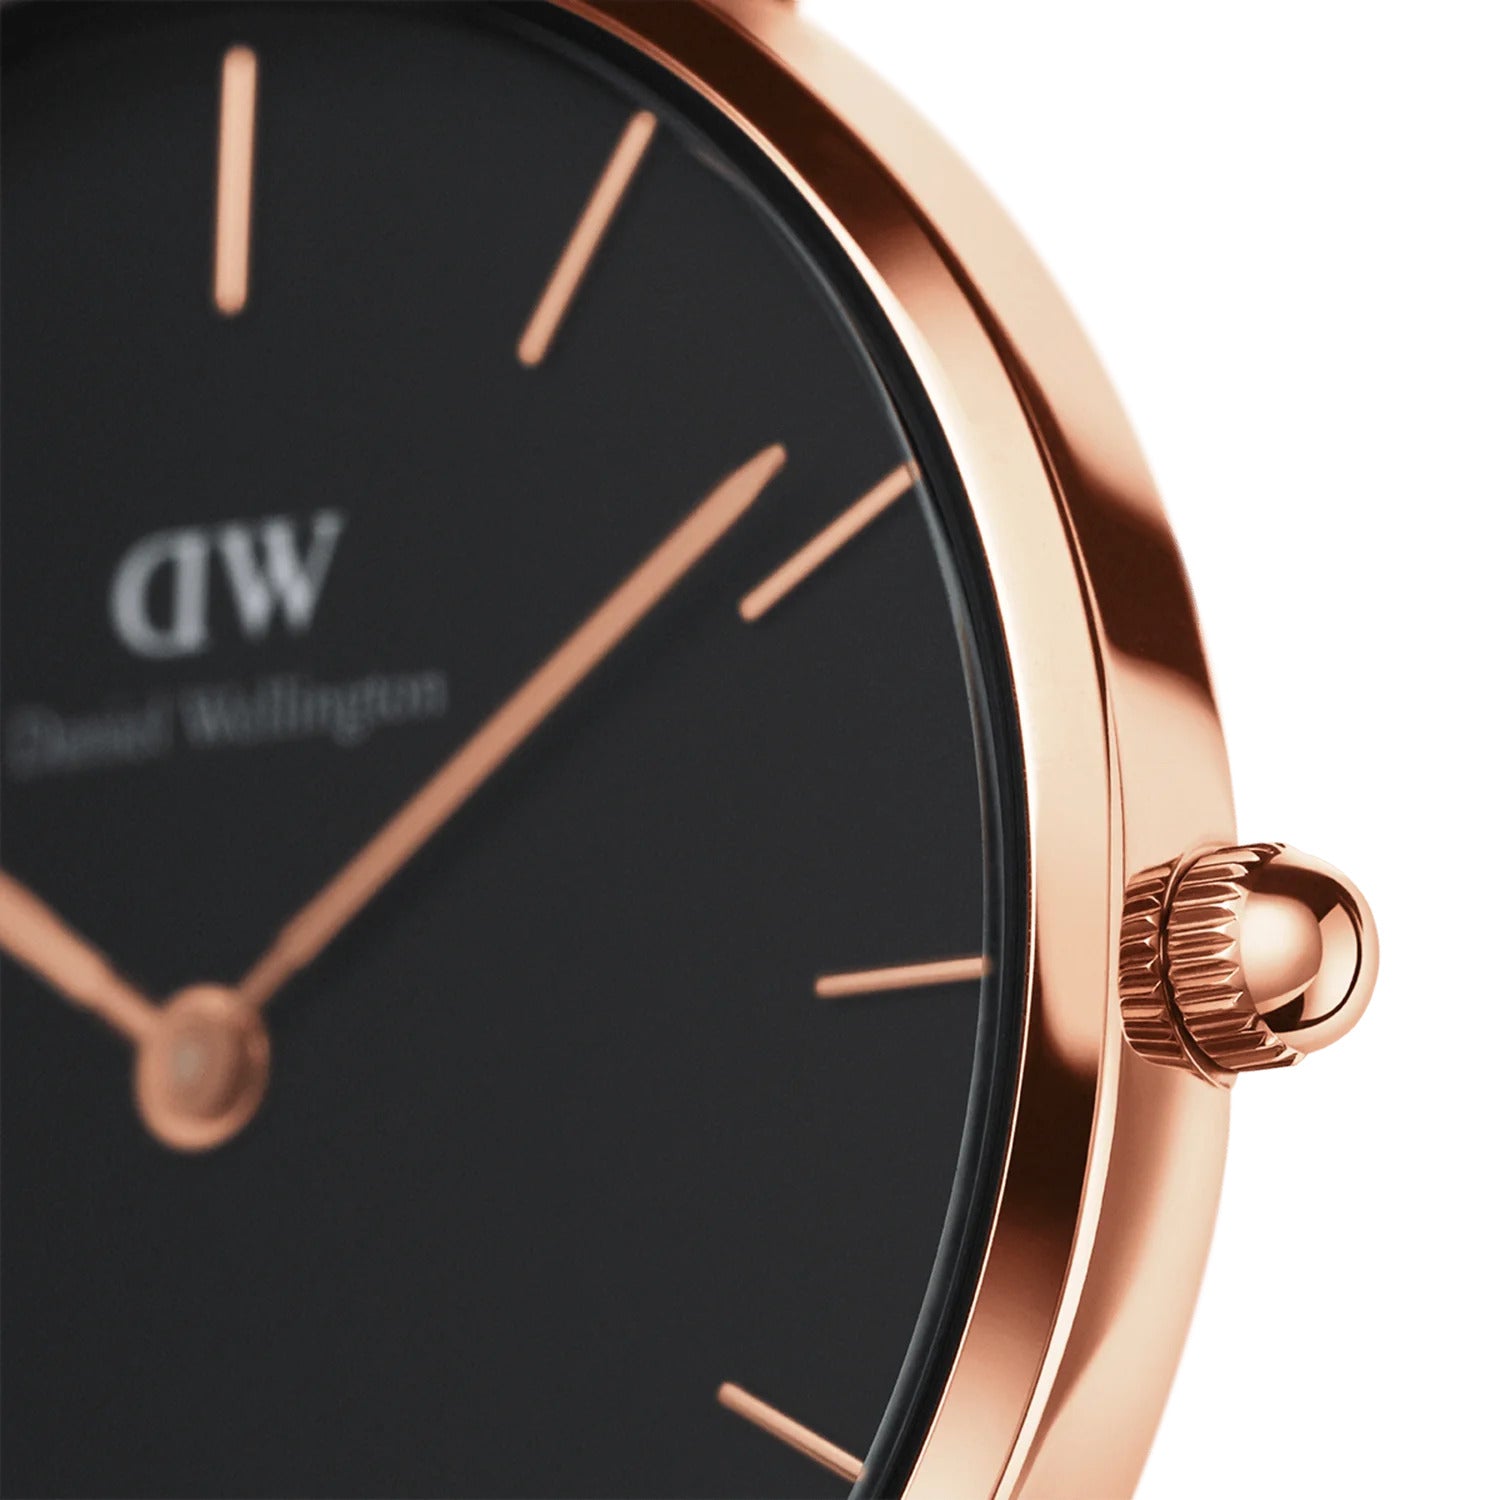 Daniel Wellington Women's Black Dial Quartz Watch - DW-1273